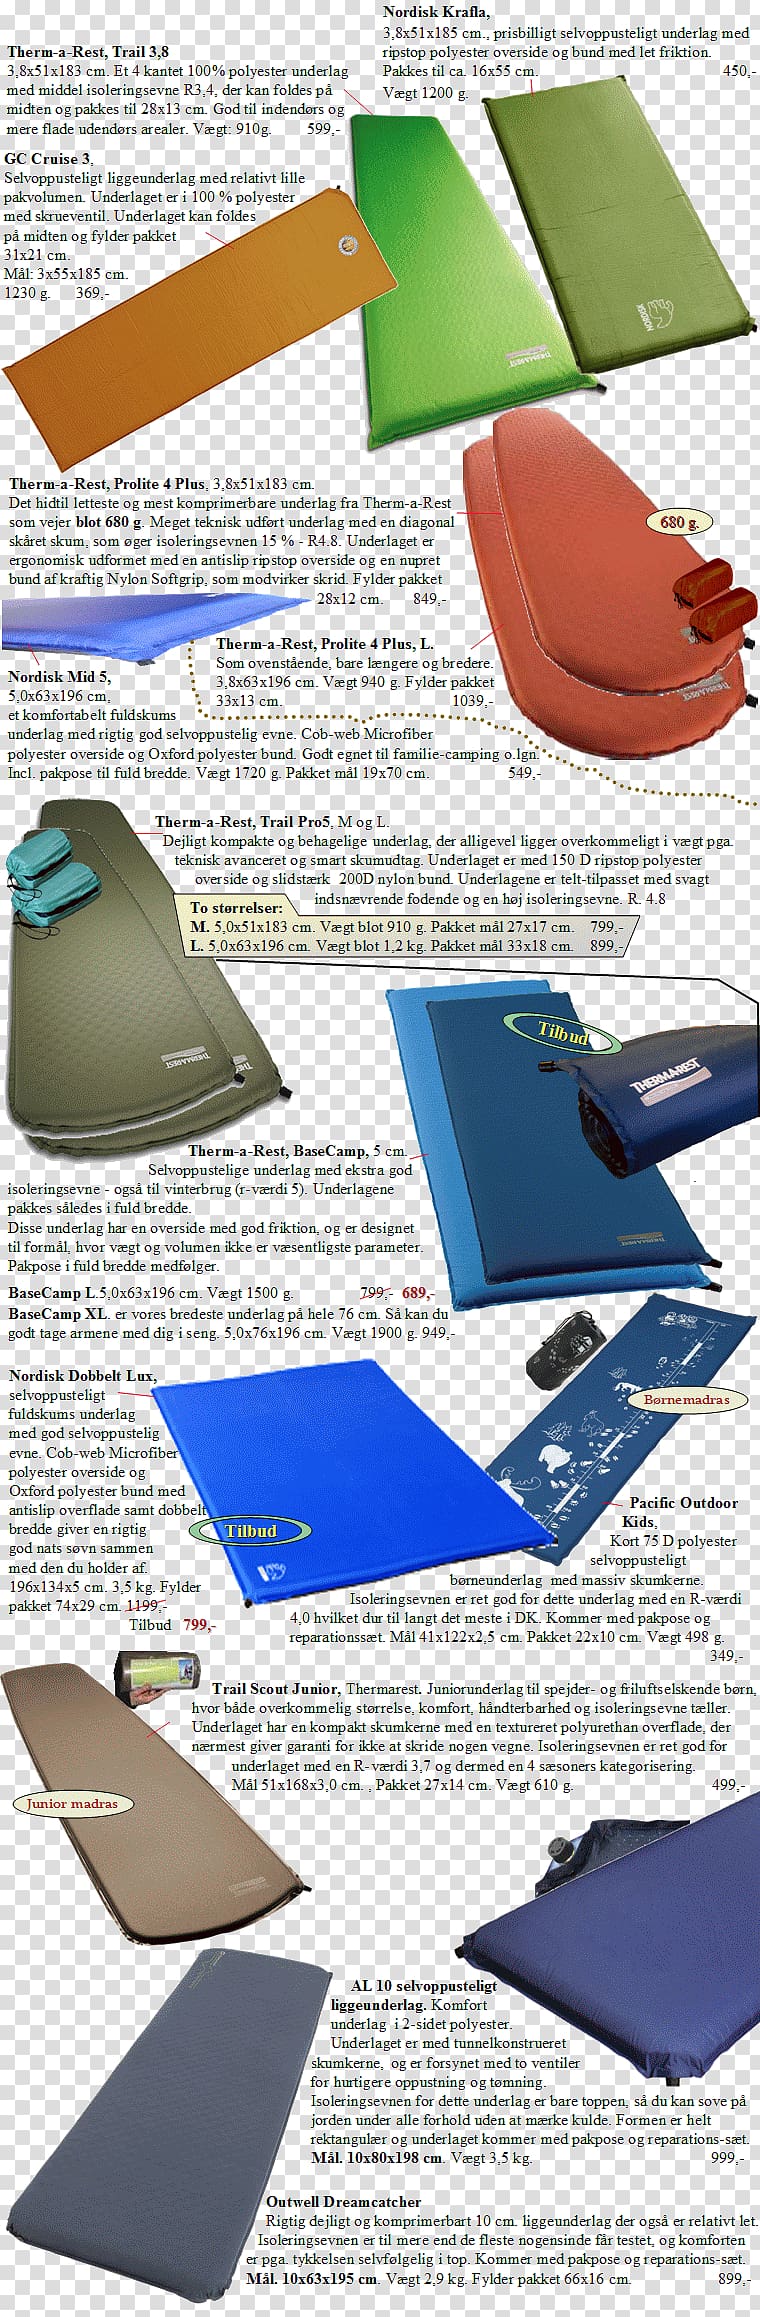 Sleeping Mats Air Mattresses Rejsequip, udstyr til globetrottere, Thermarest transparent background PNG clipart